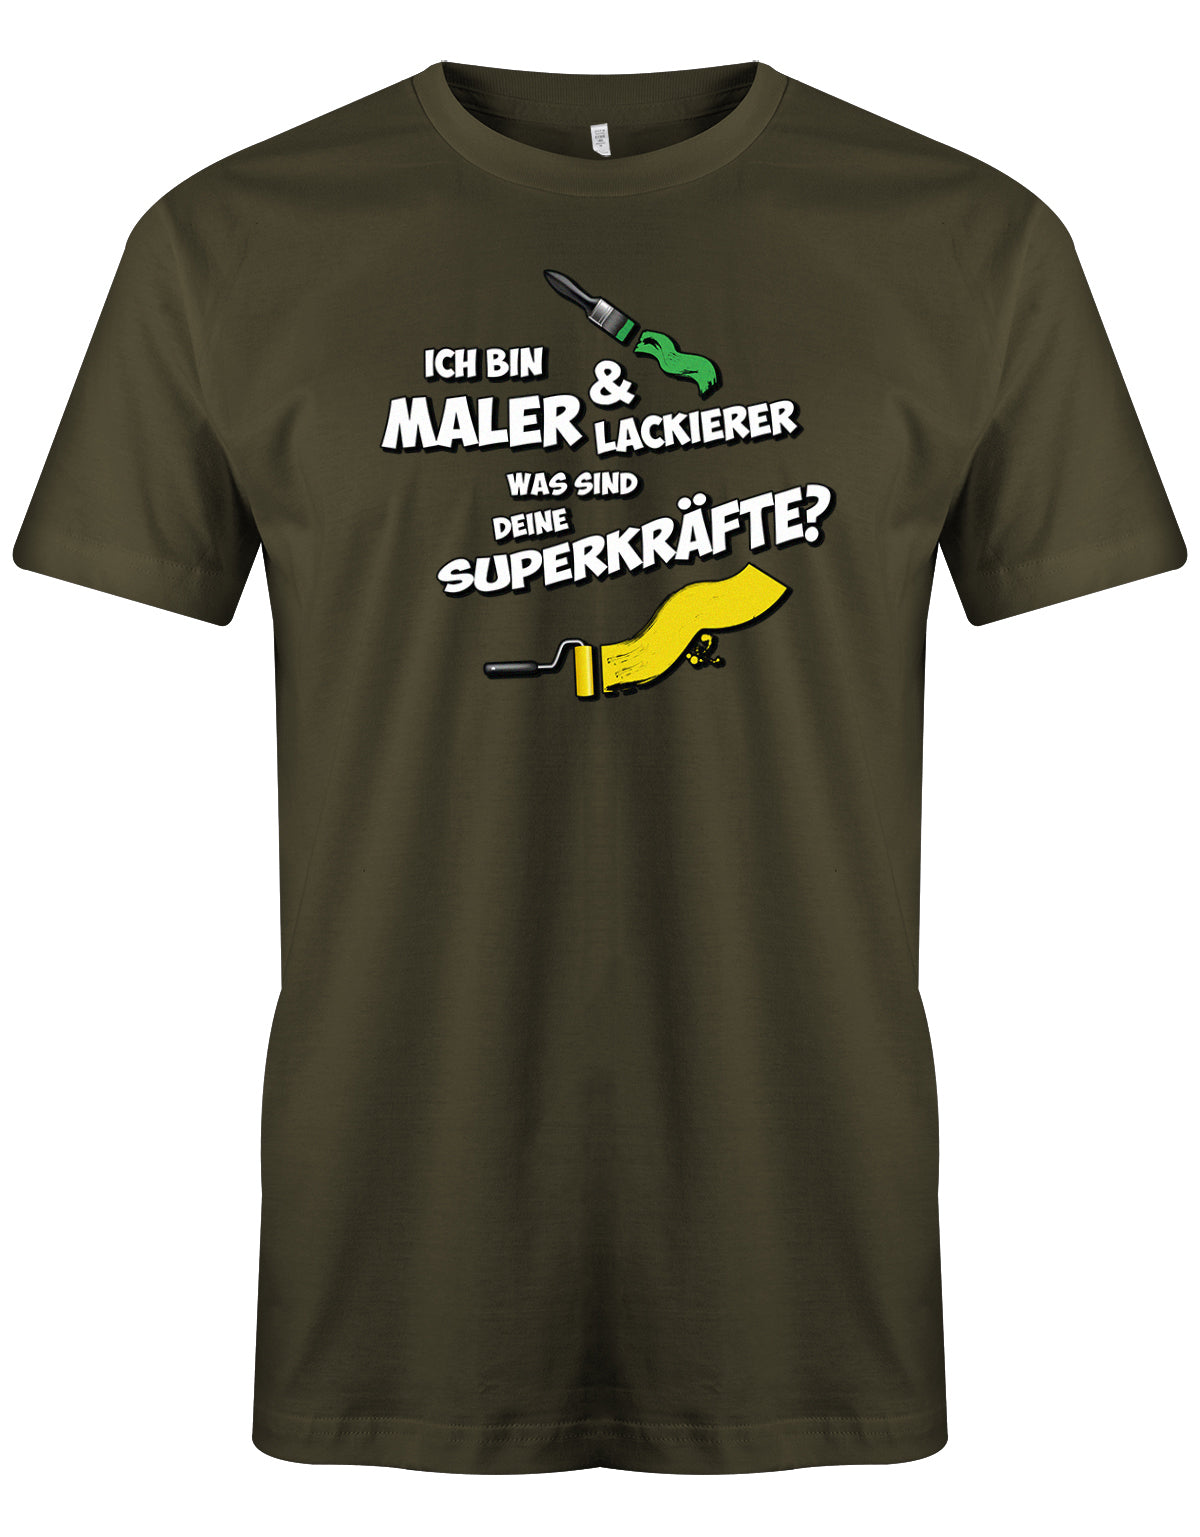 Maler und Lackierer Shirt - Ich bin Maler und Lackierer, was sind deine Superkräfte? Army